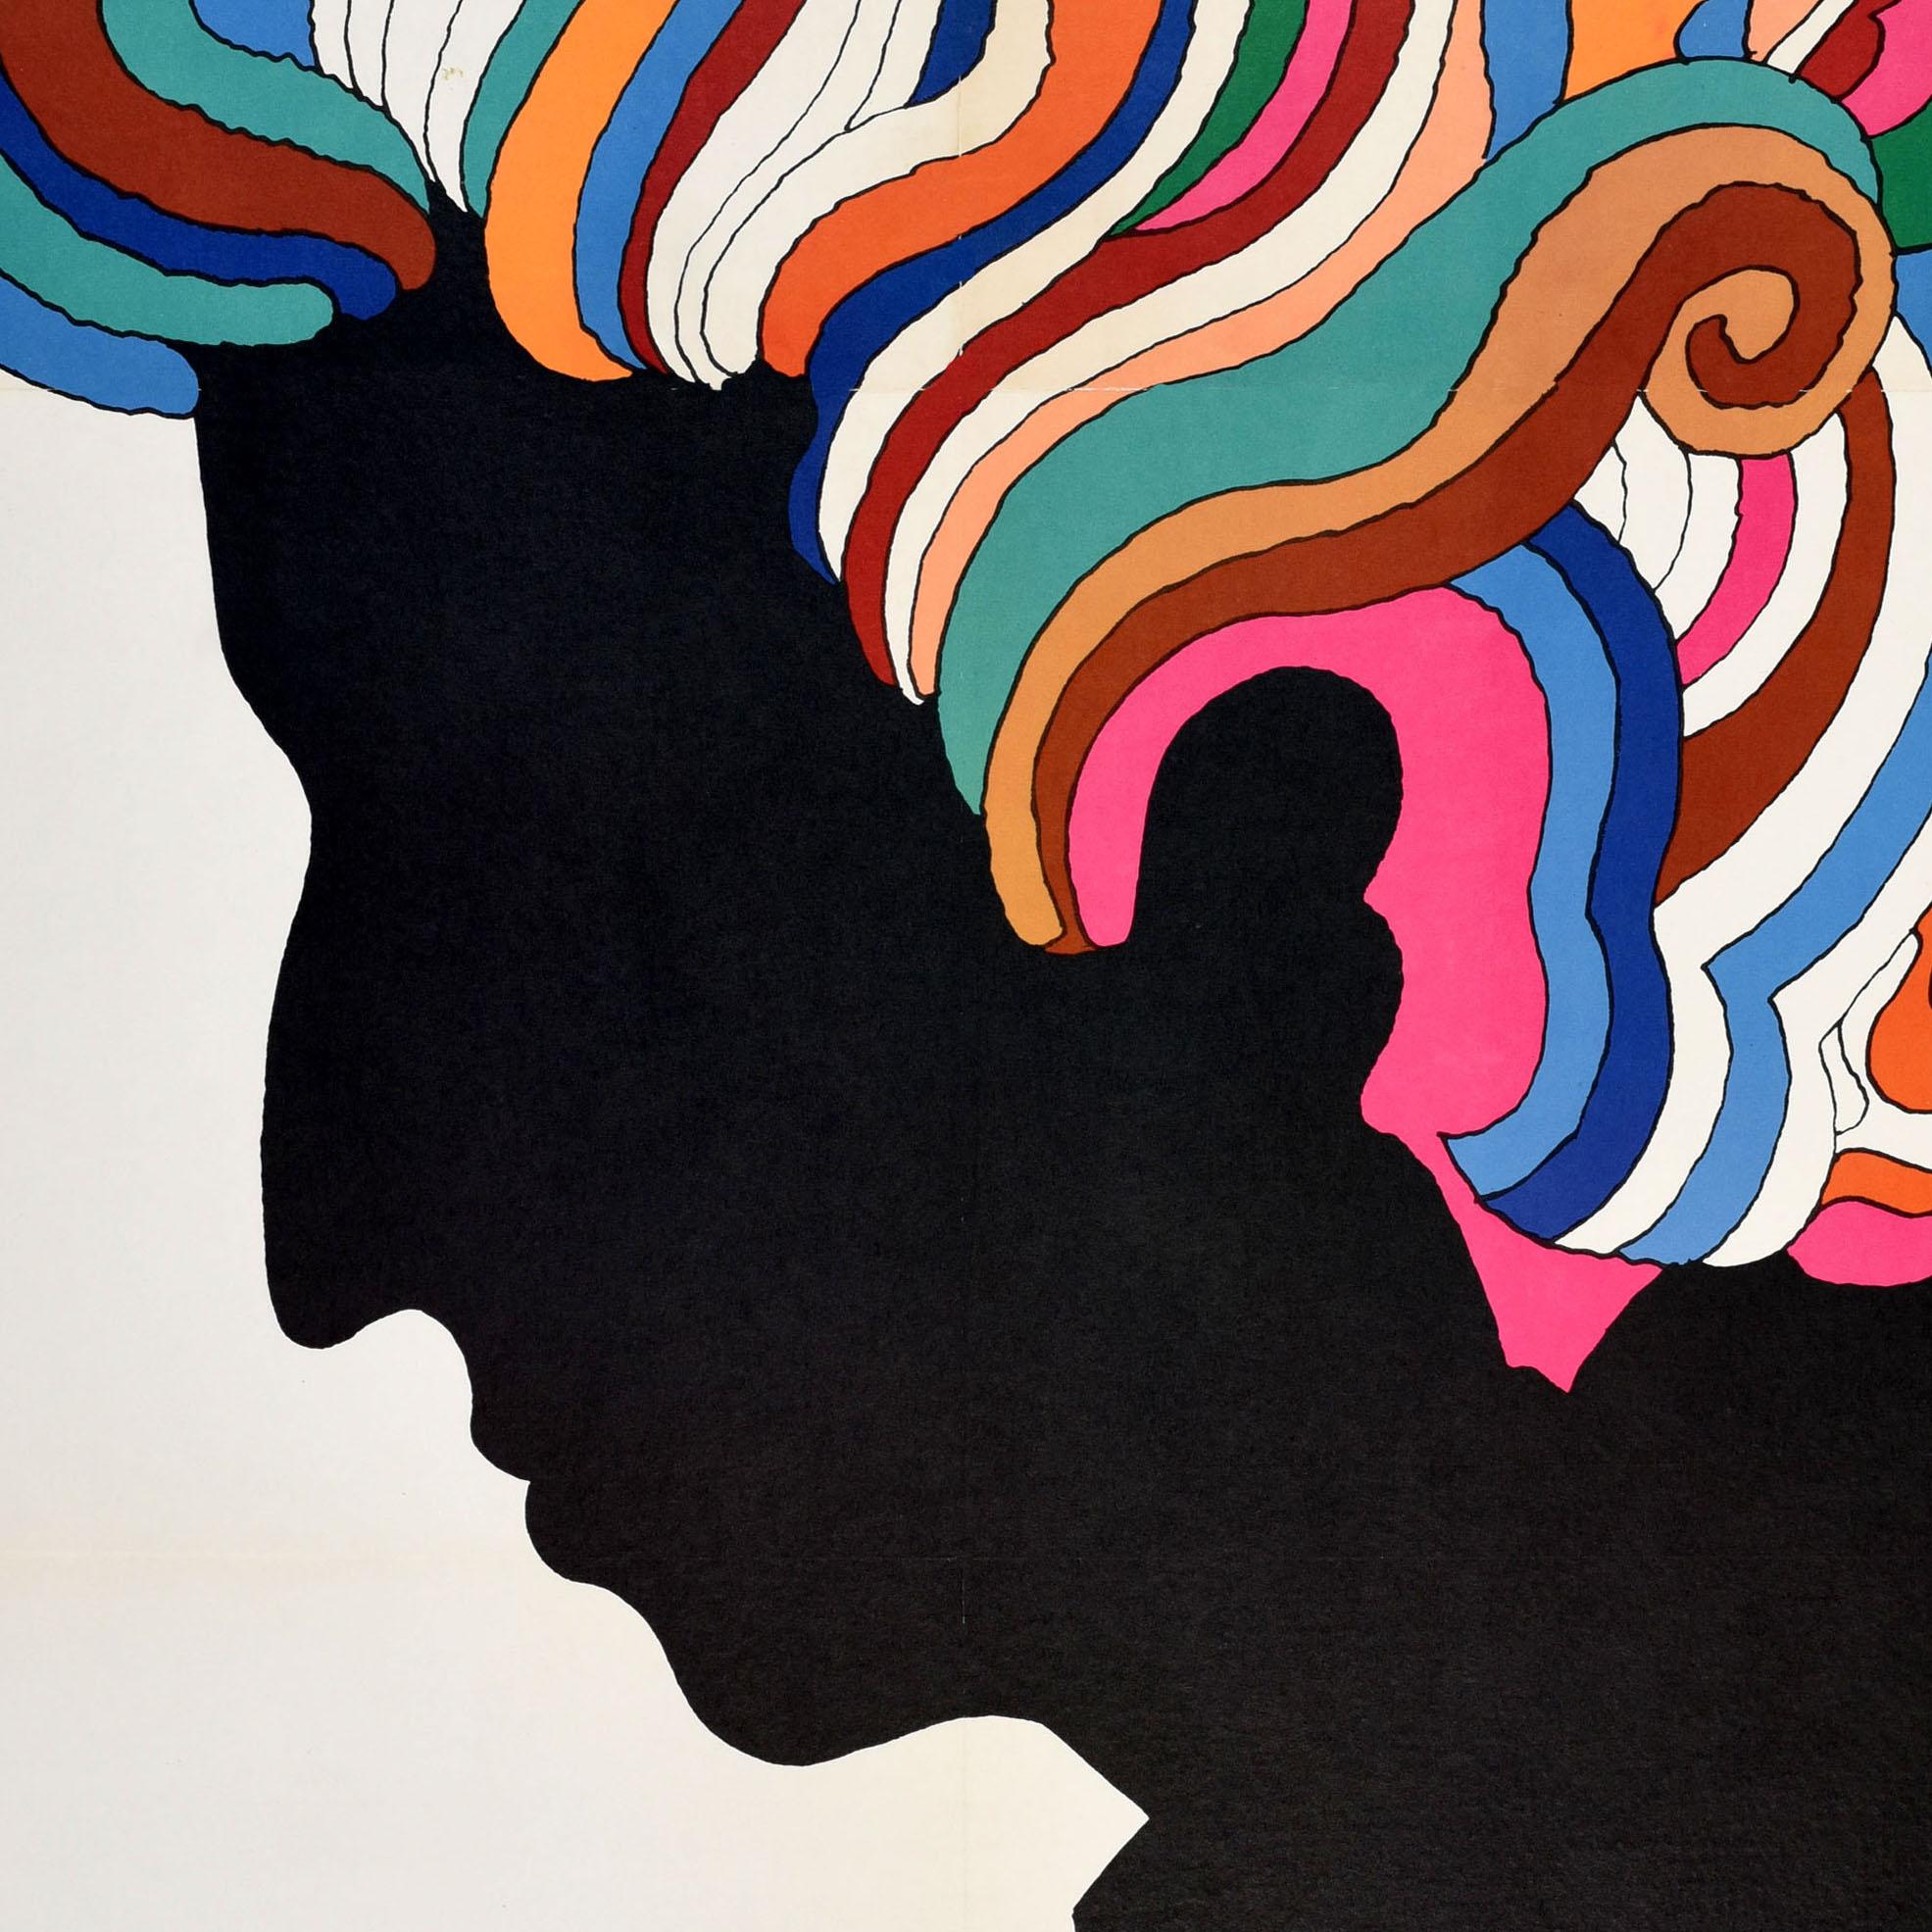 Affiche musicale originale de l'époque psychédélique des années 60, représentant l'image emblématique du musicien Bob Dylan (Robert Allen Zimmerman ; né en 1941). Ce dessin coloré représentant le profil de Dylan avec des cheveux tourbillonnants,